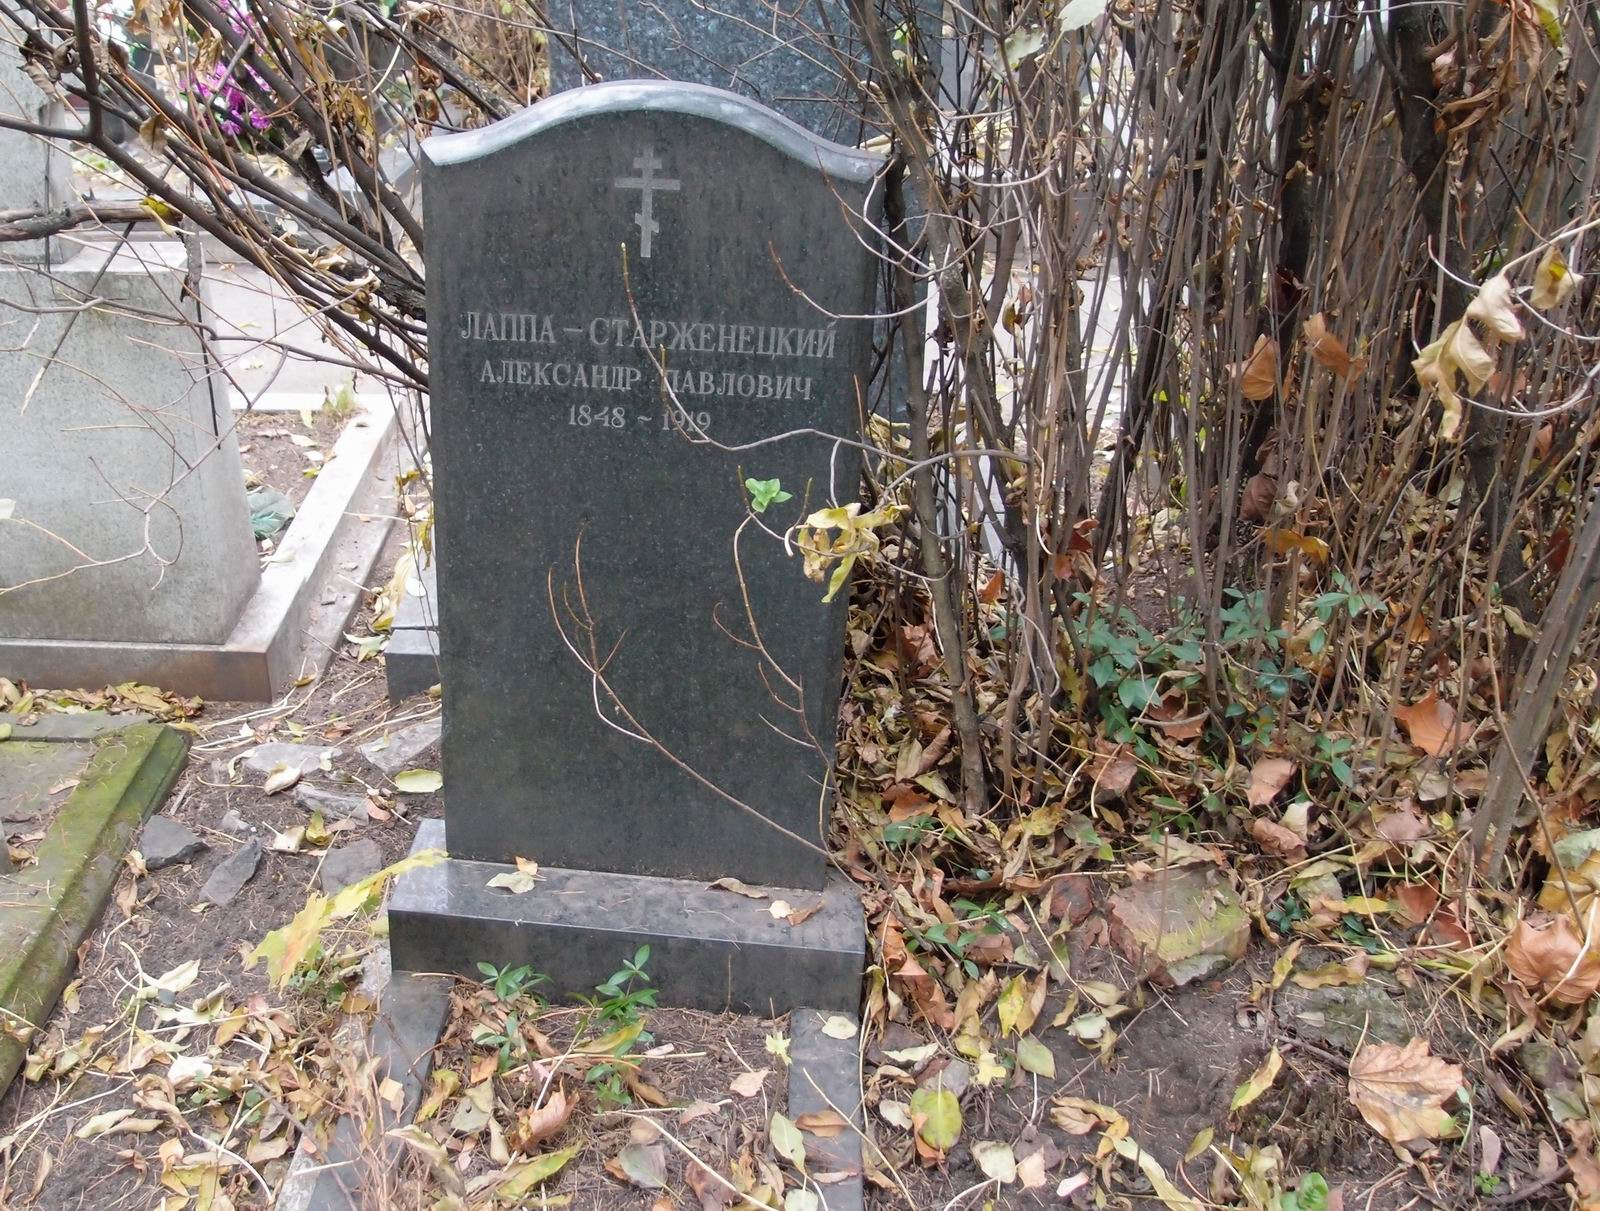 Памятник на могиле Лаппы-Старженецкого А.П. (1848–1919), на Новодевичьем кладбище (2–33–7).